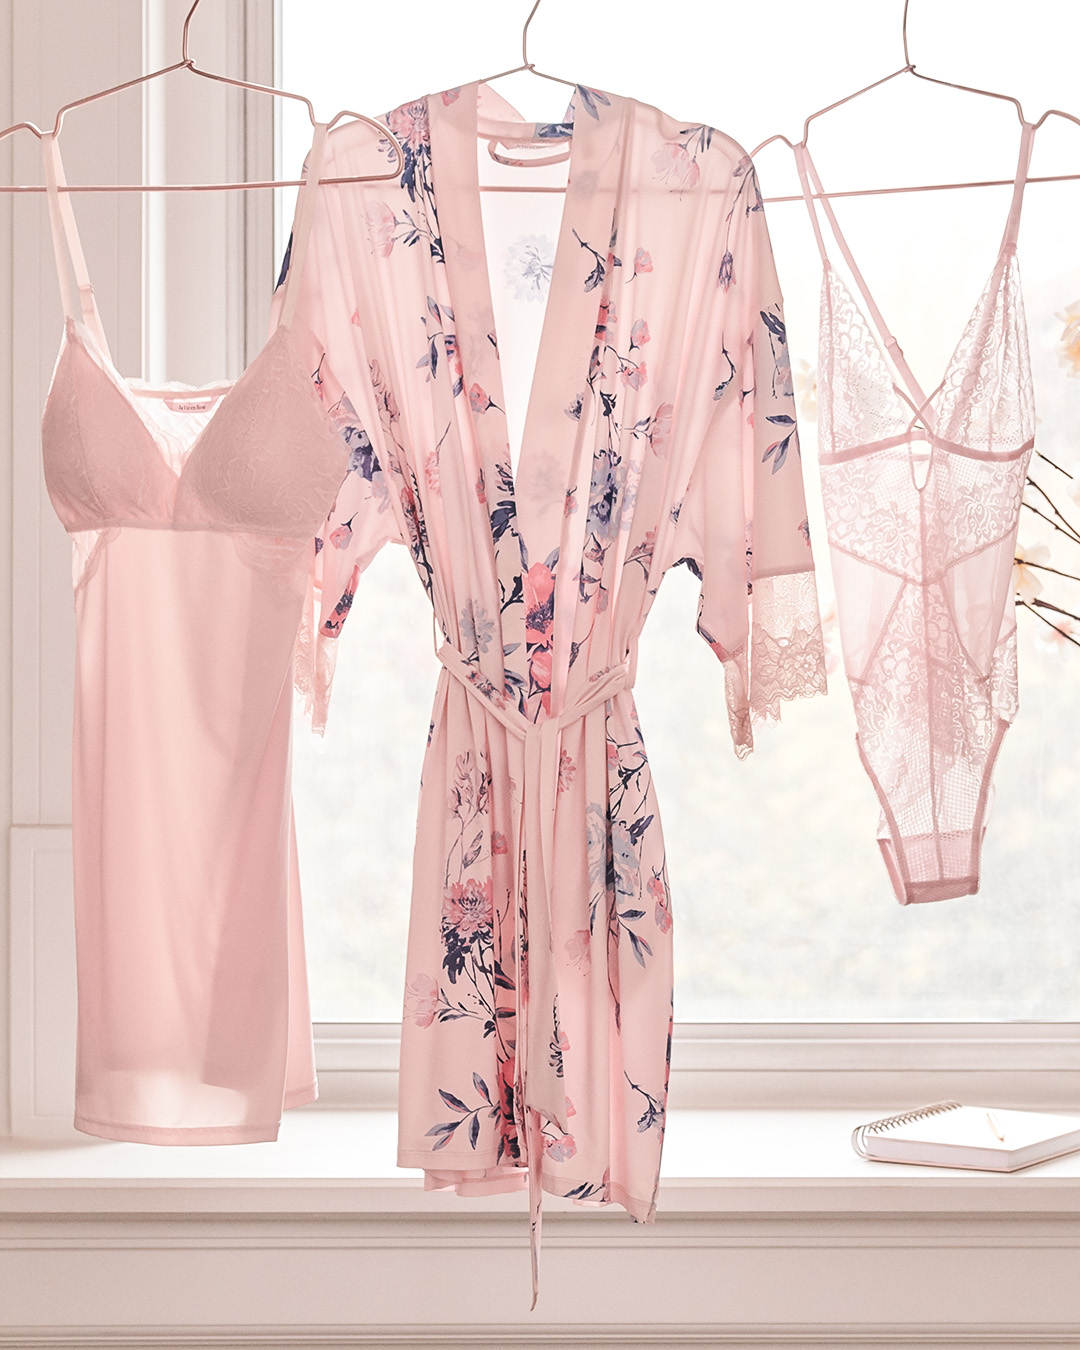 La Vie En Rose, Intimates & Sleepwear